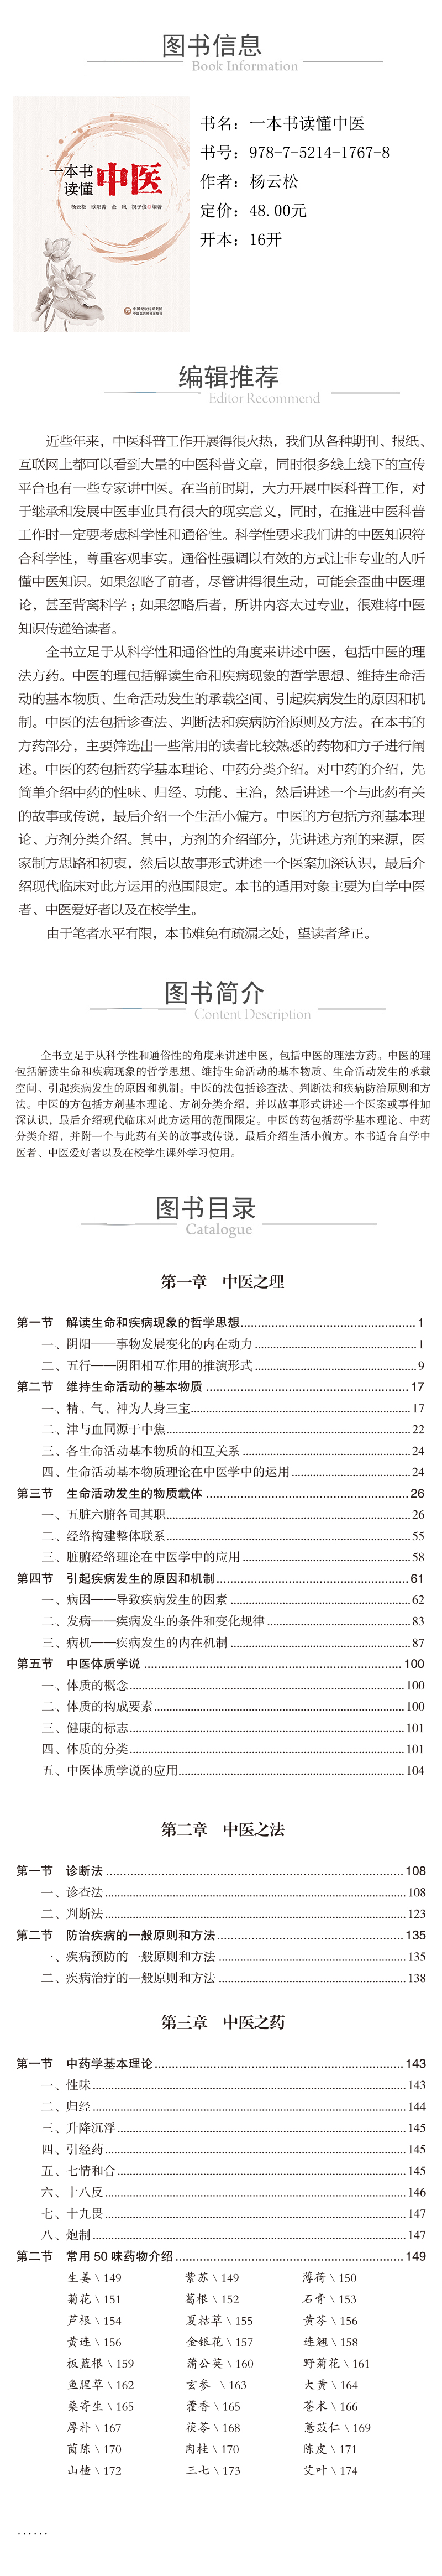 978-7-5214-1767-8--一本书读懂中医-xcy.jpg